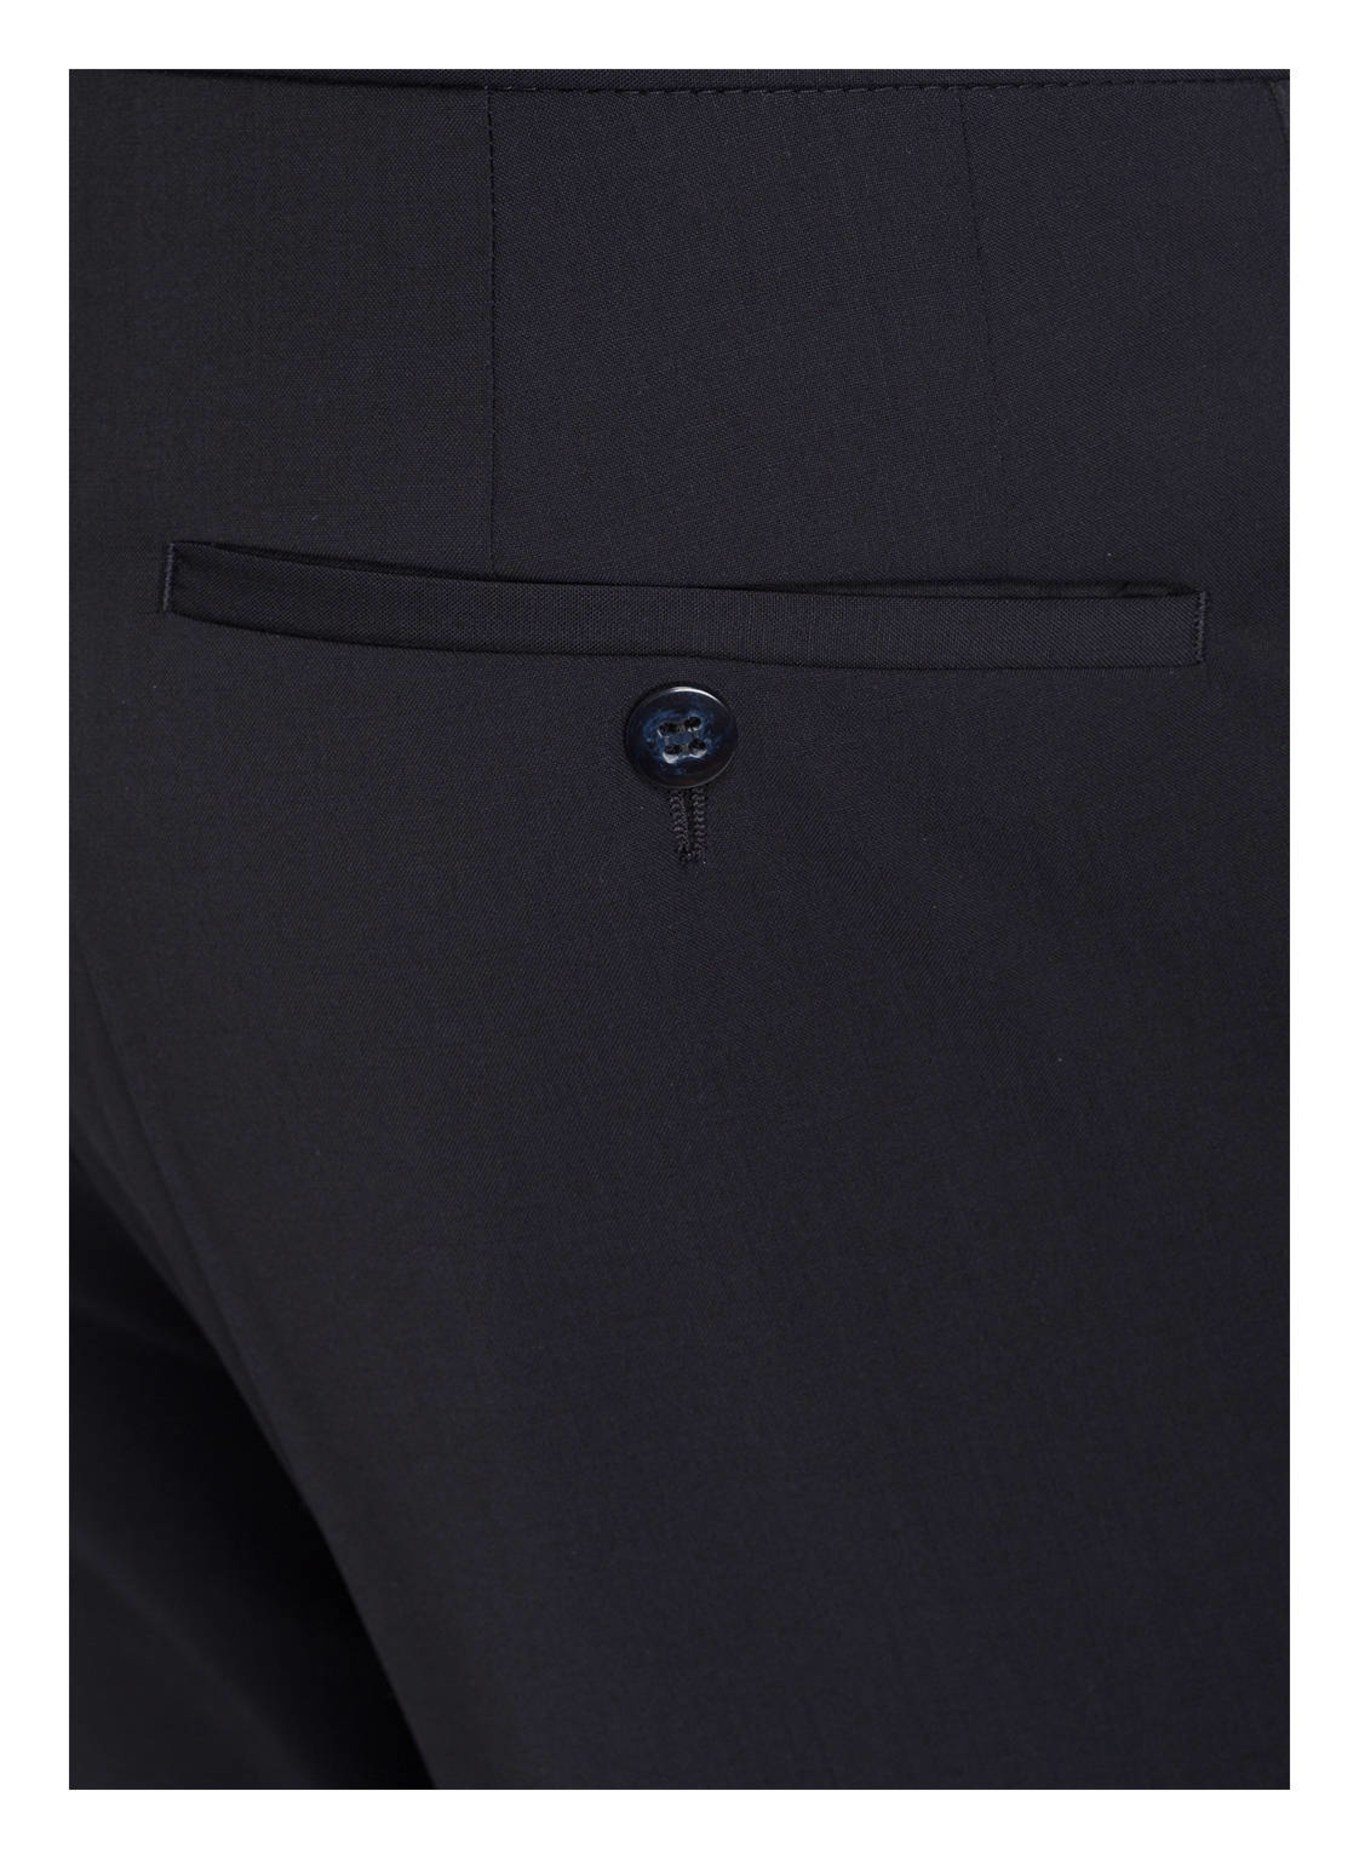 WILVORST Suit trousers slim fit, Color: 030 BLAU (Image 6)